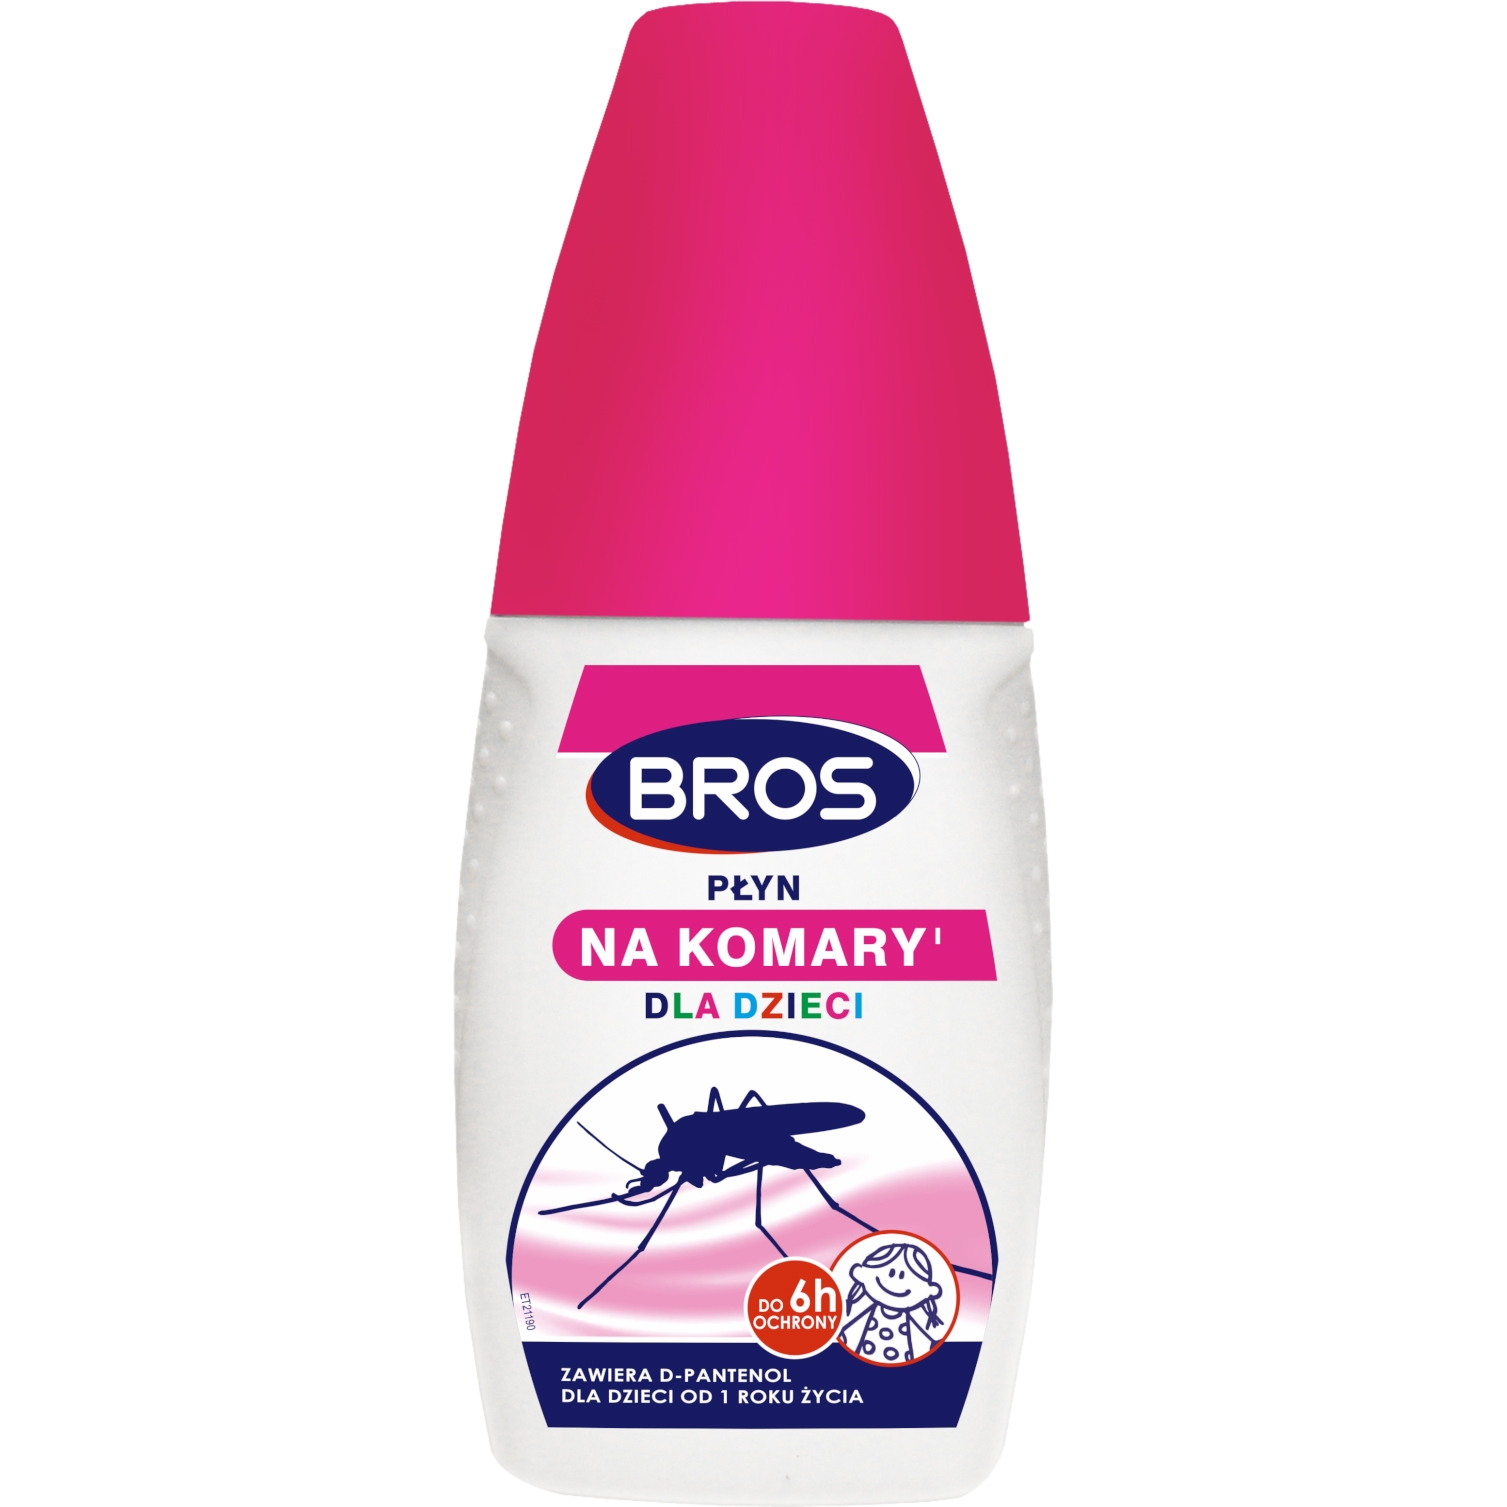 Image of Płyn na komary Bros dla dzieci 50 ml (595-007)